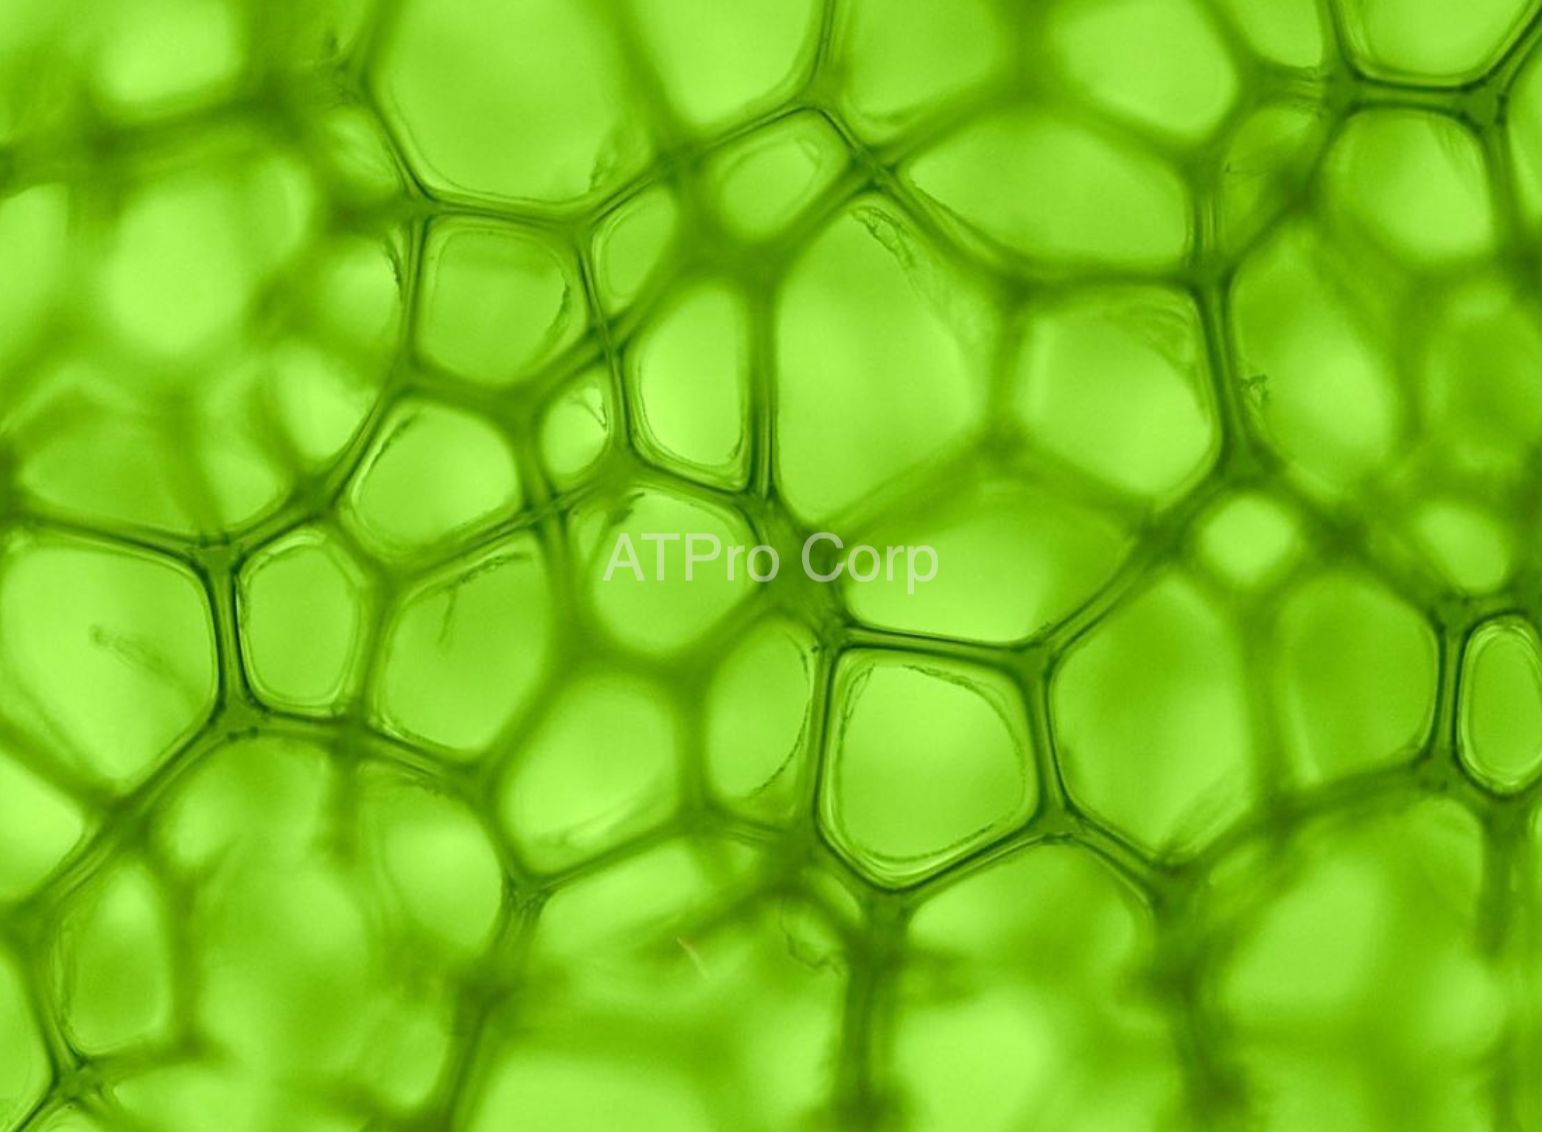 Chlorophyll A (diệp lục)